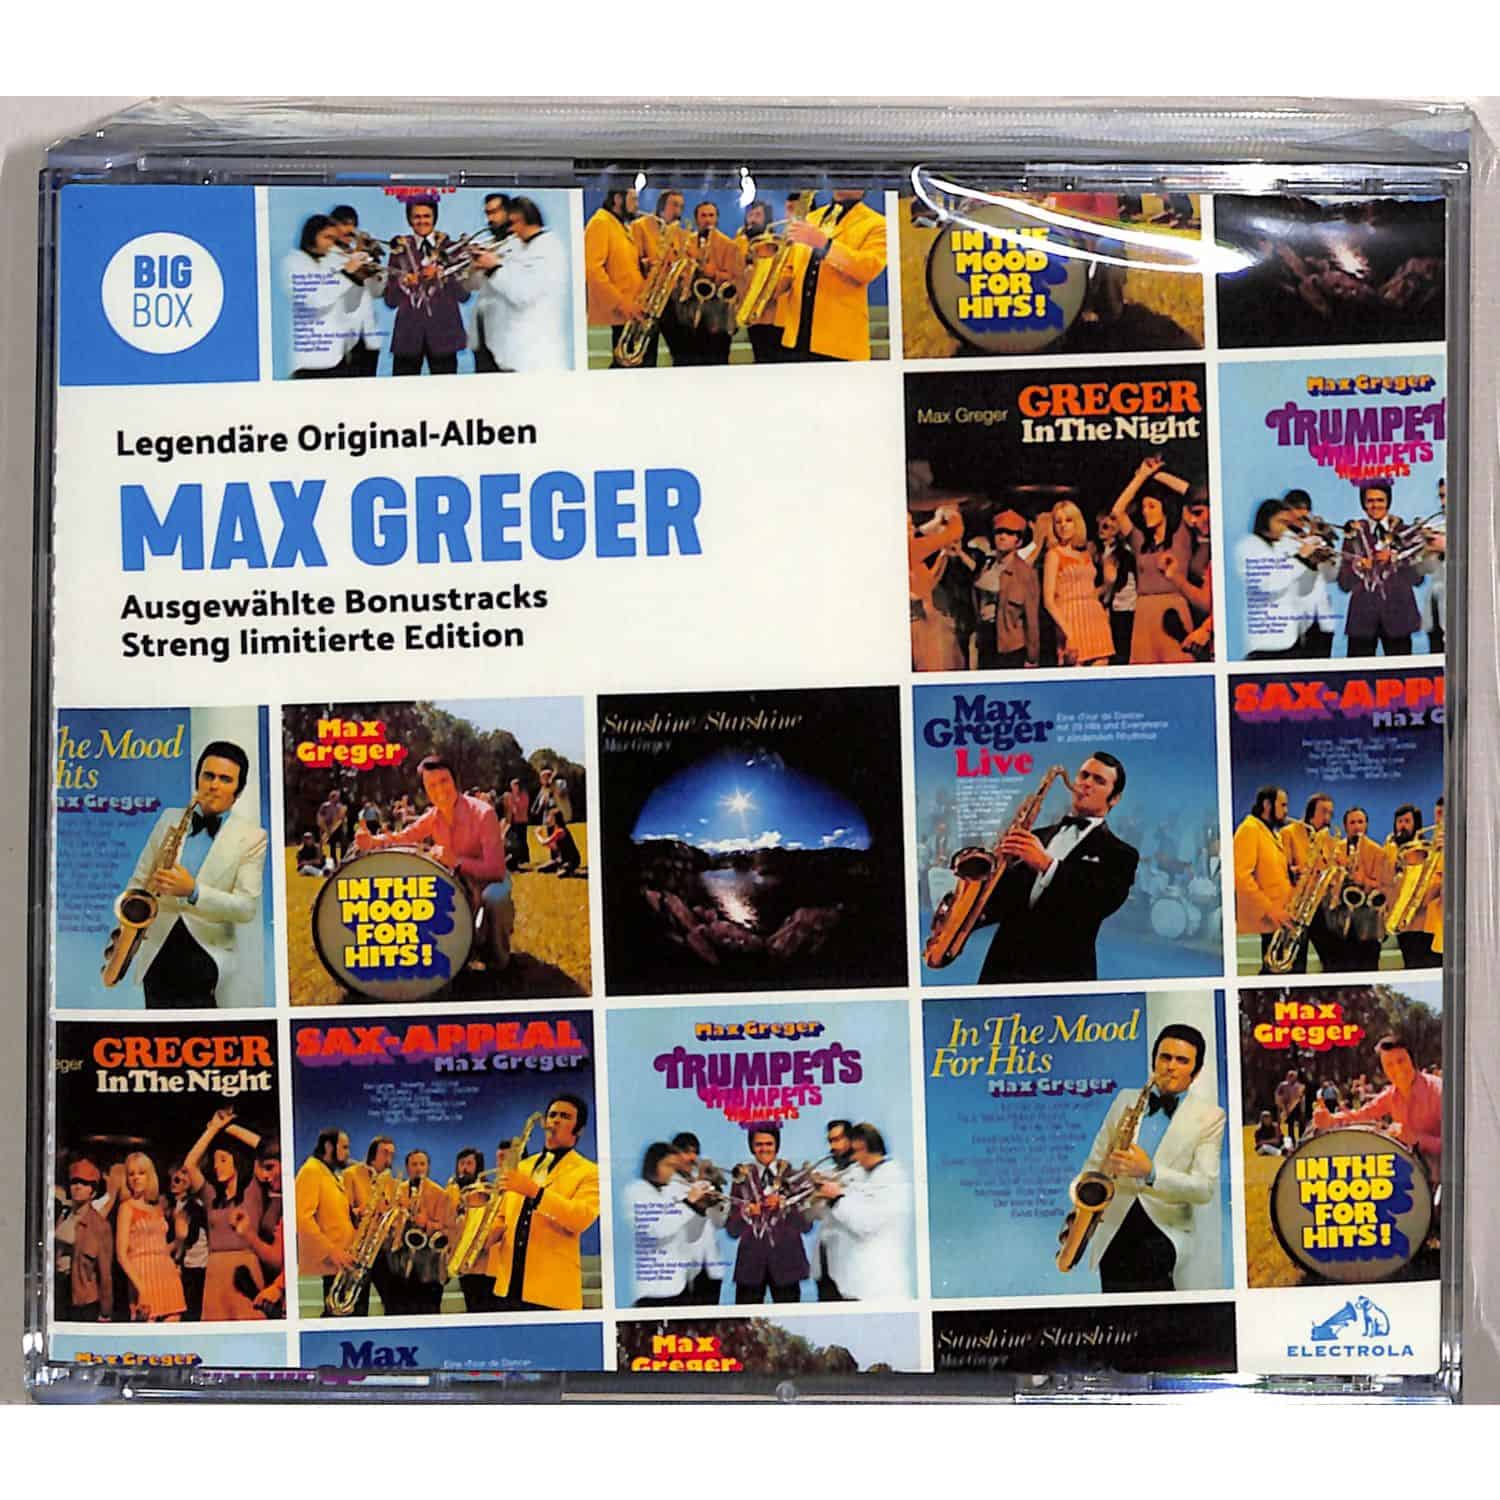 Max Greger - BIG BOX 